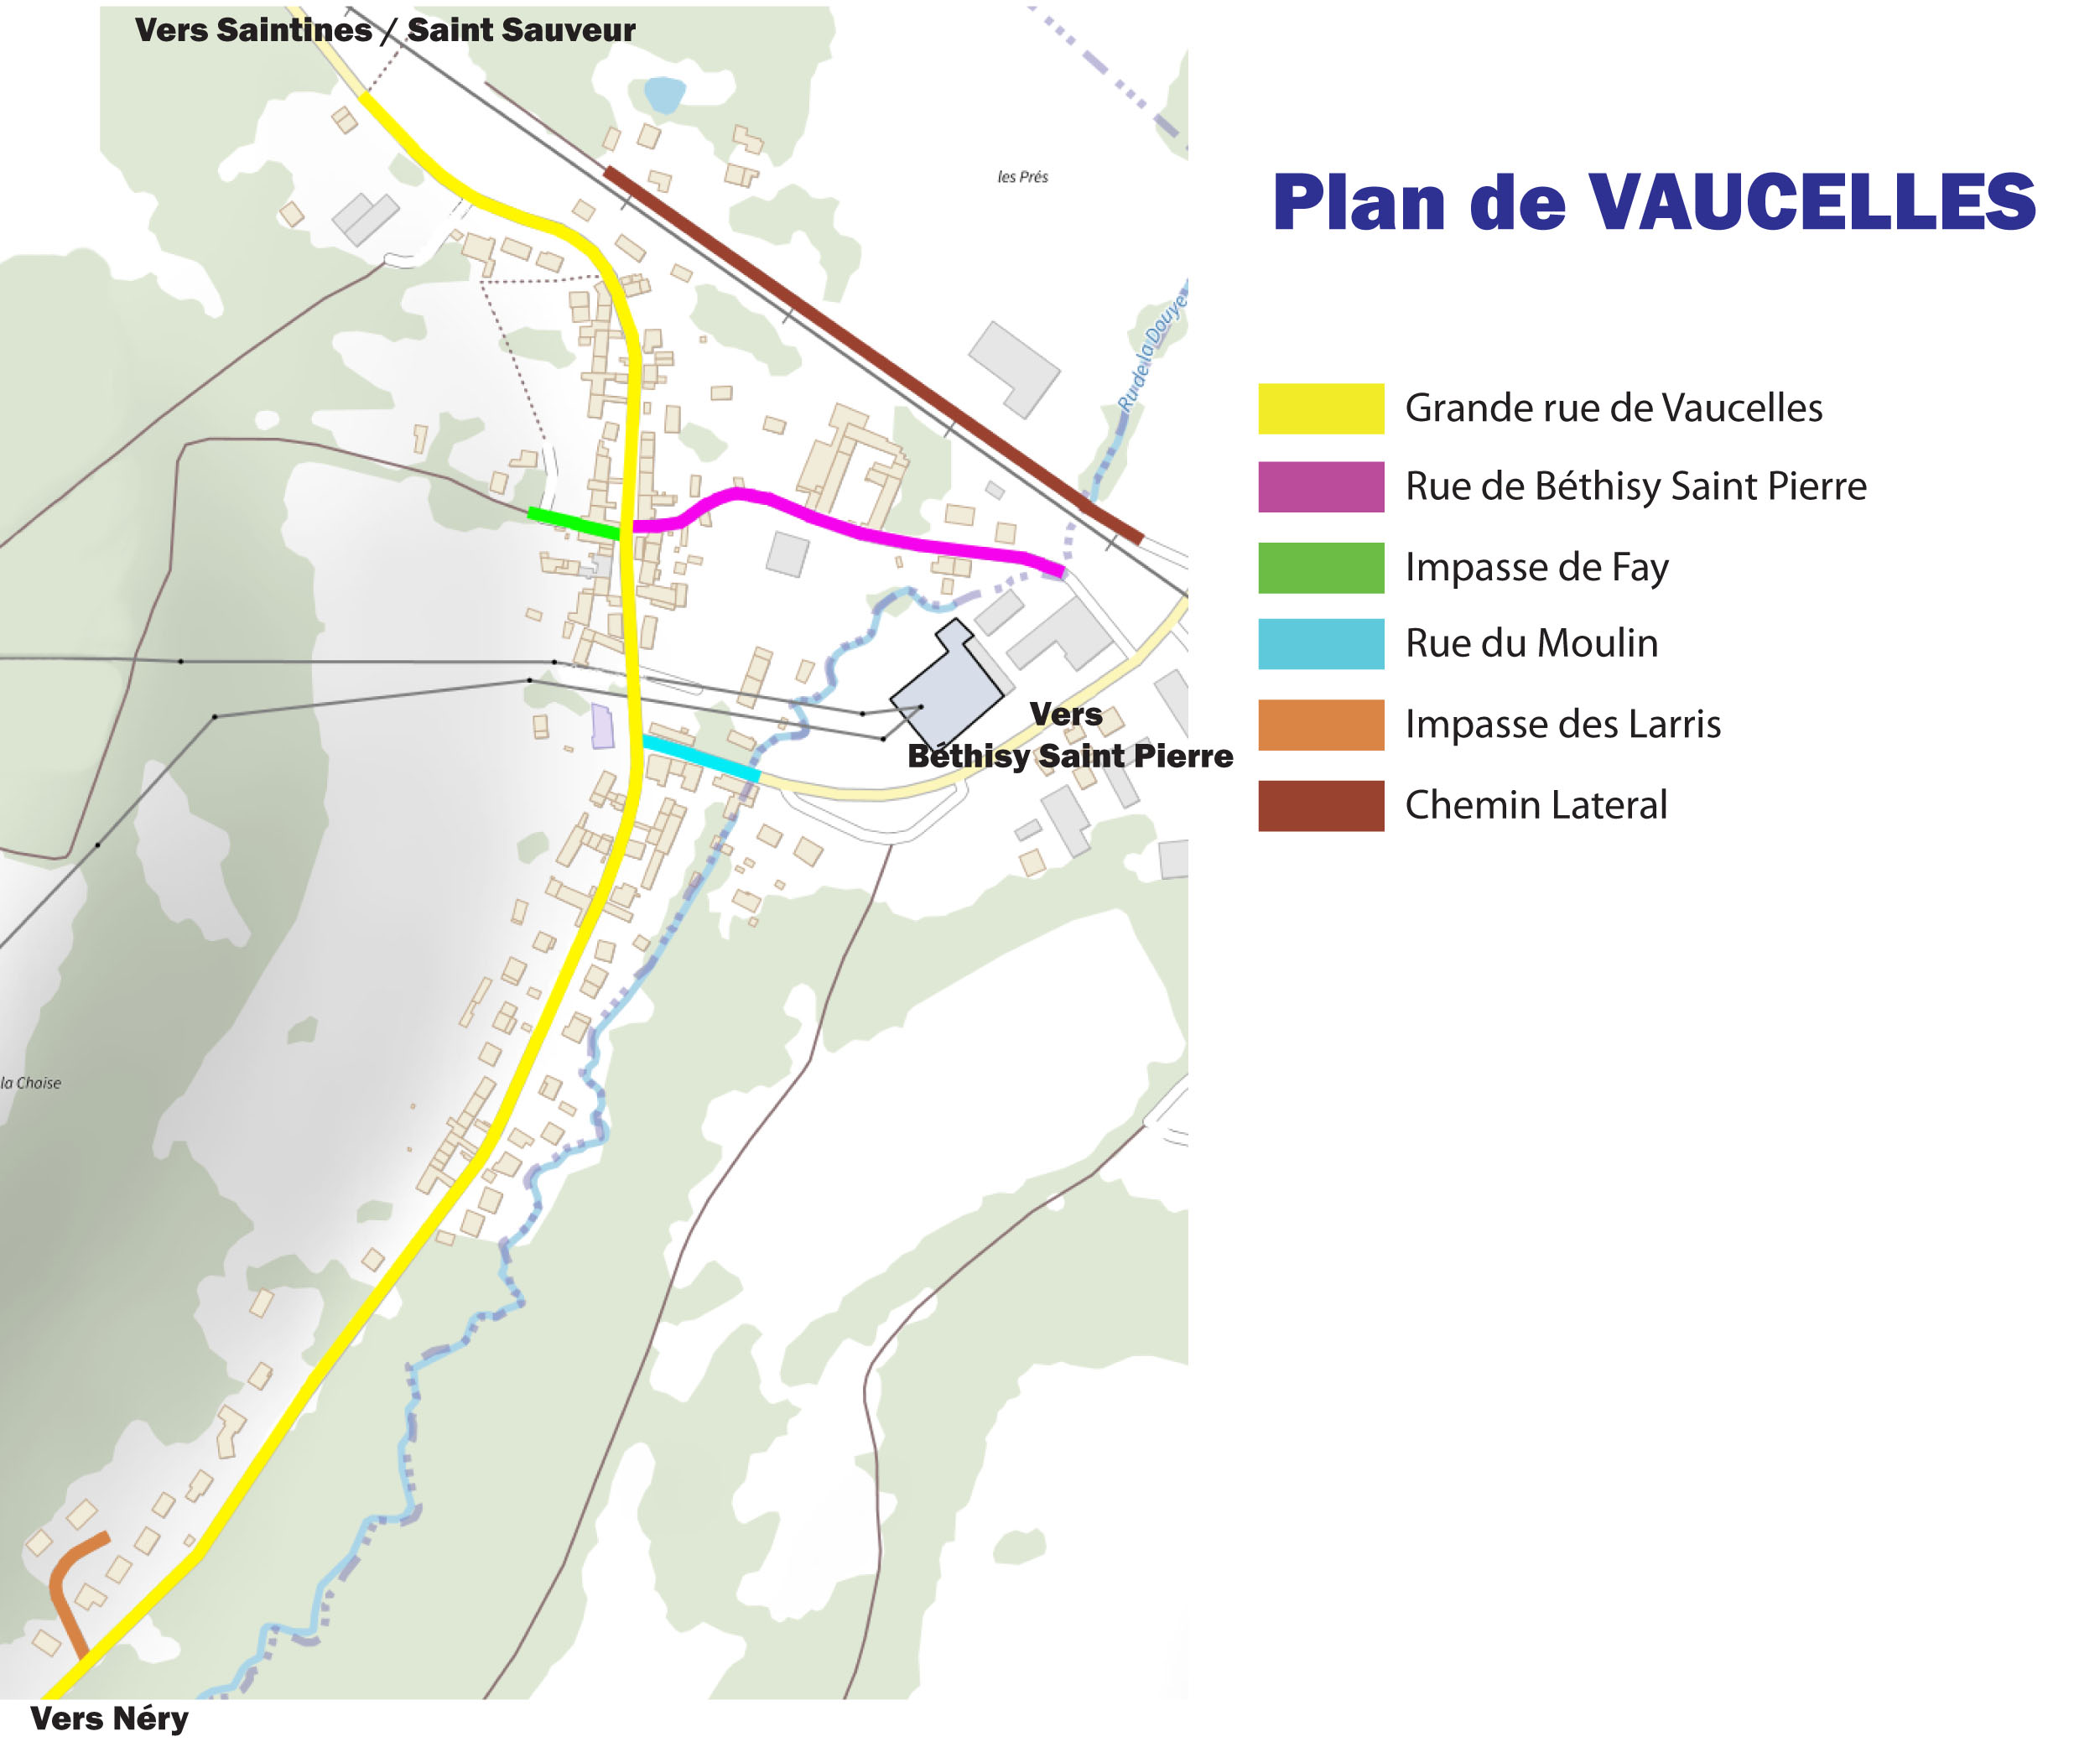 Plan de Vaucelles.jpg